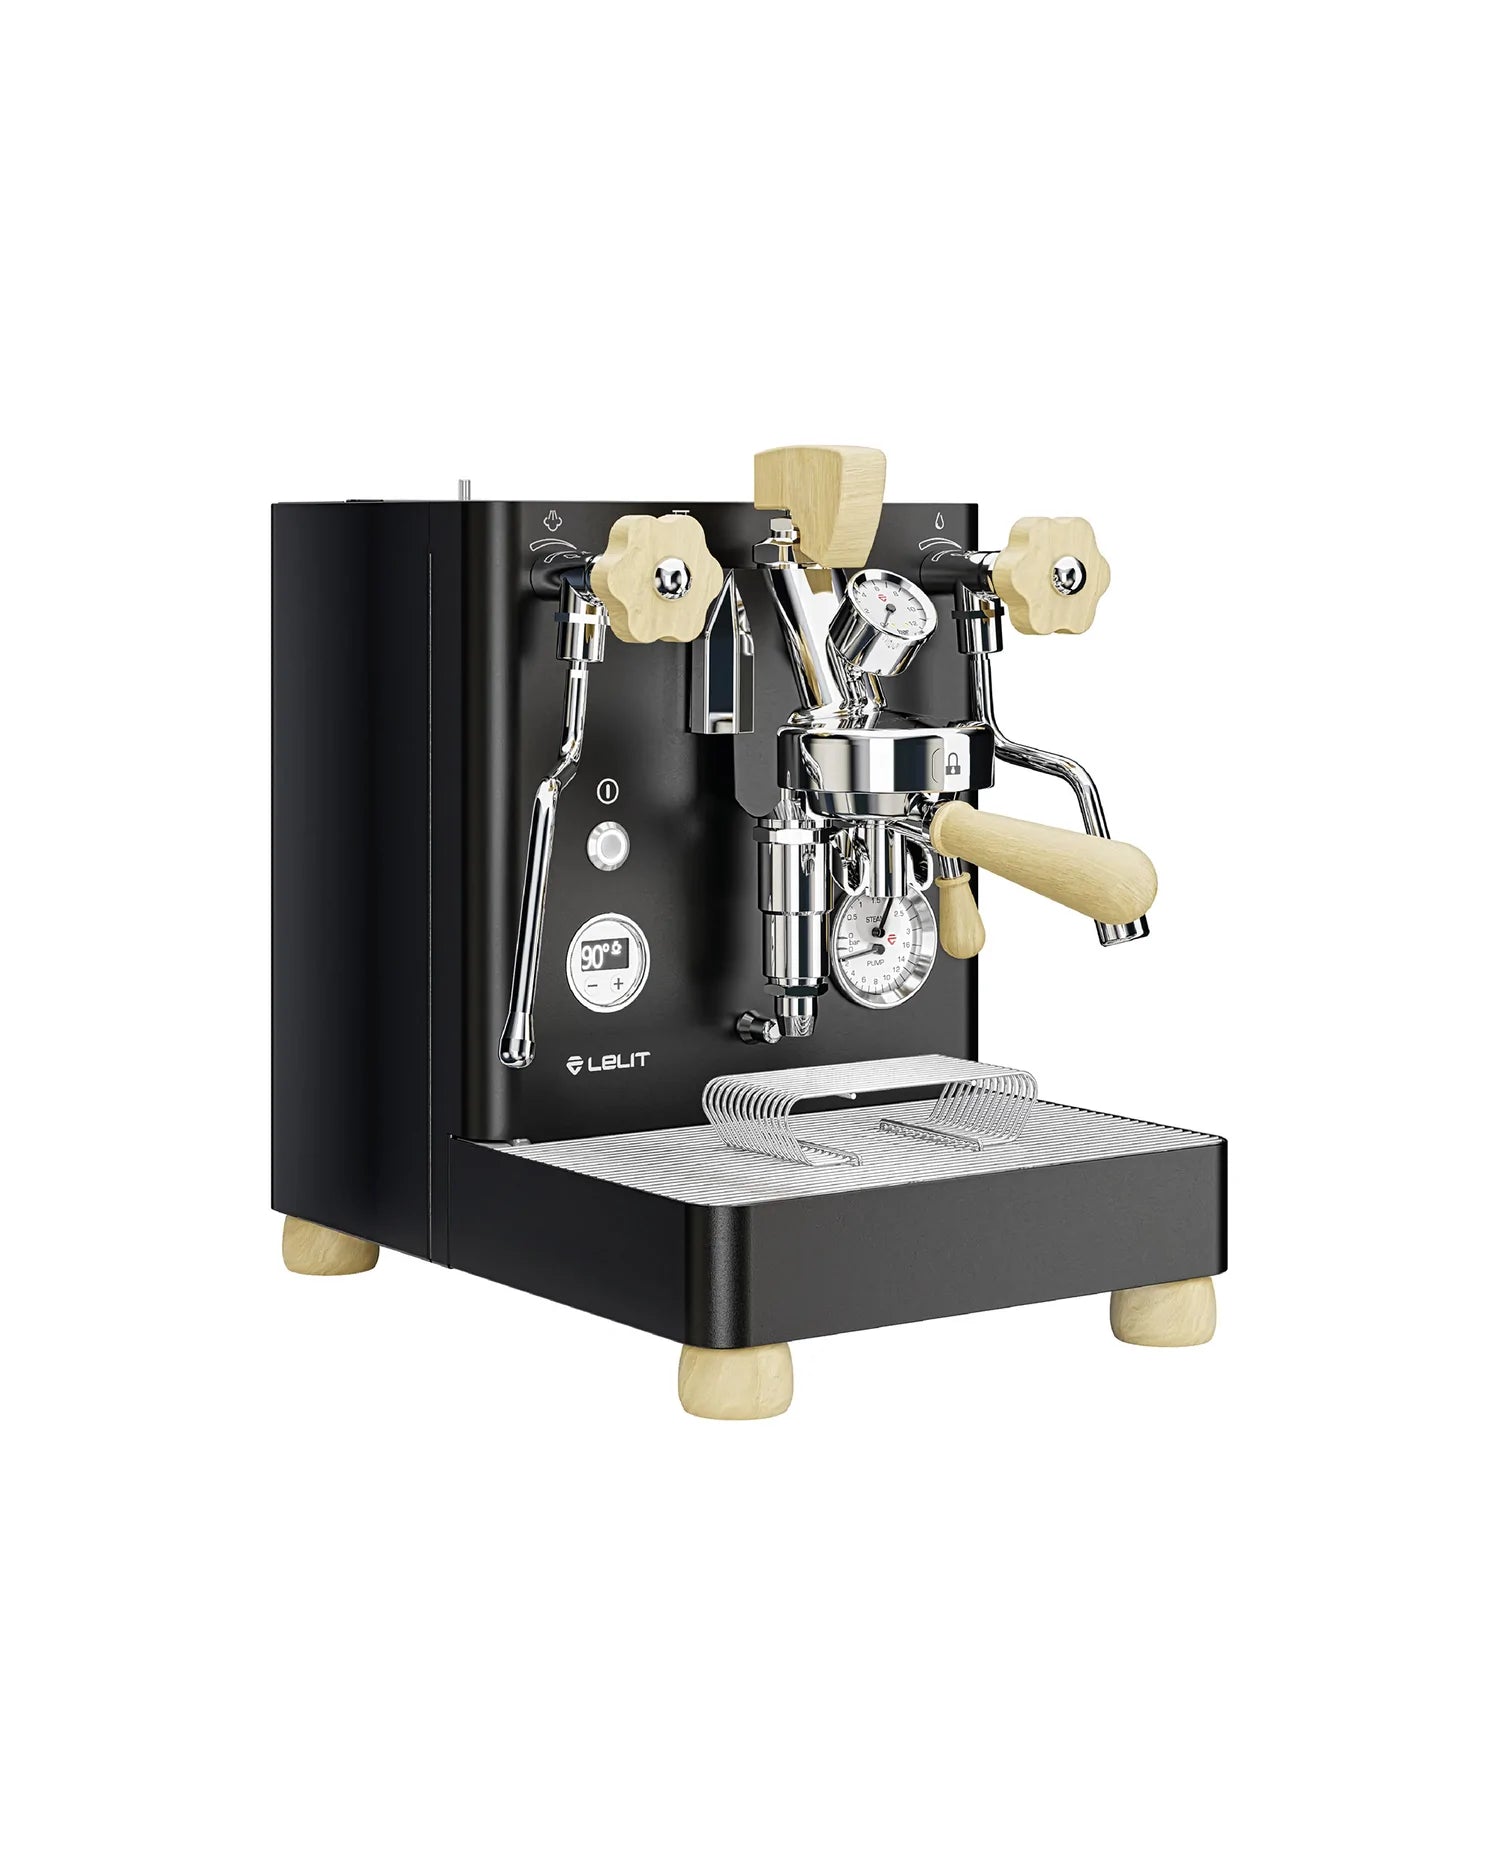 Lelit GIULIETTAX PL2SVX - Máquina de café espresso profesional